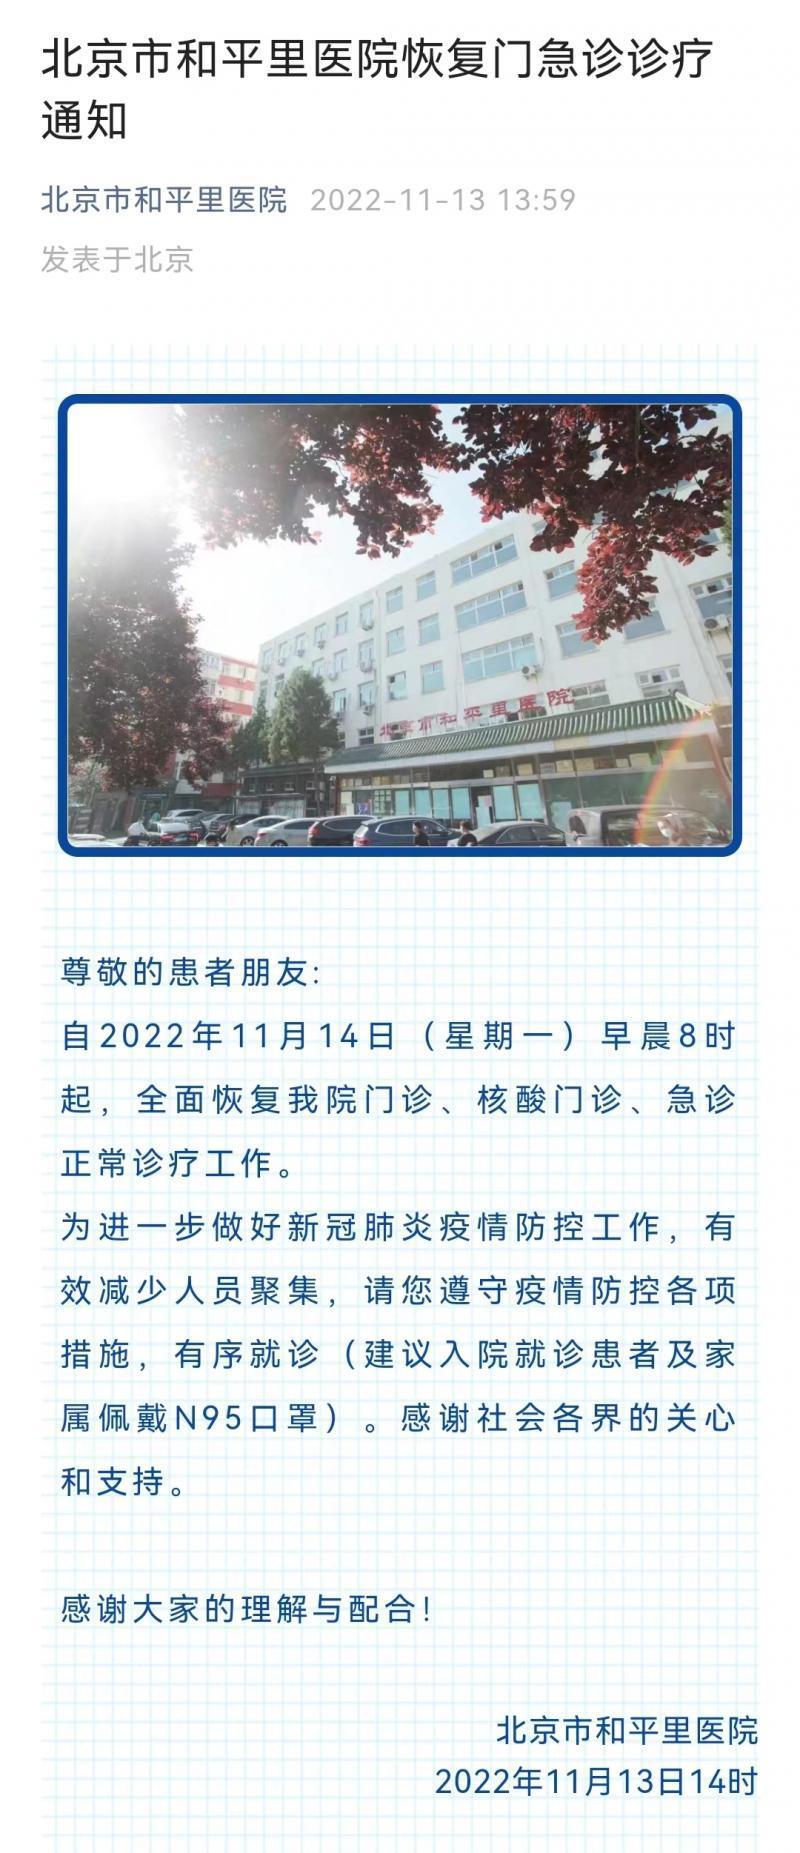 北京市和平里医院明早8时起恢复门急诊诊疗